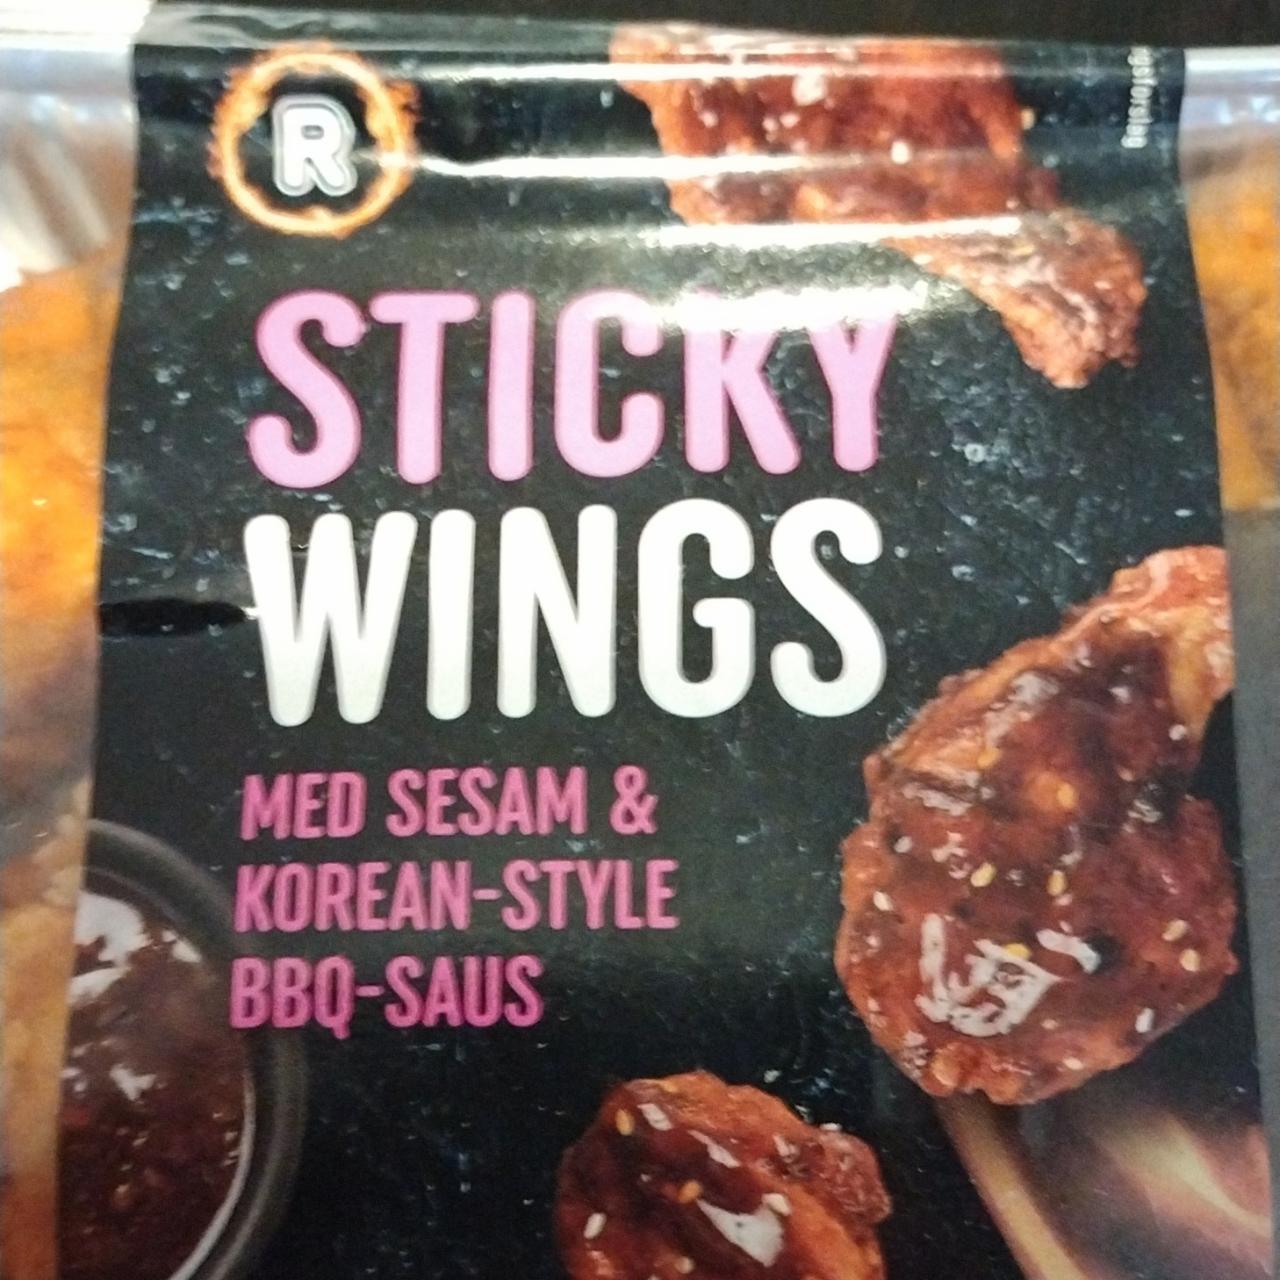 Fotografie - Sticky Wings med sesam & korean-style BBQ-saus